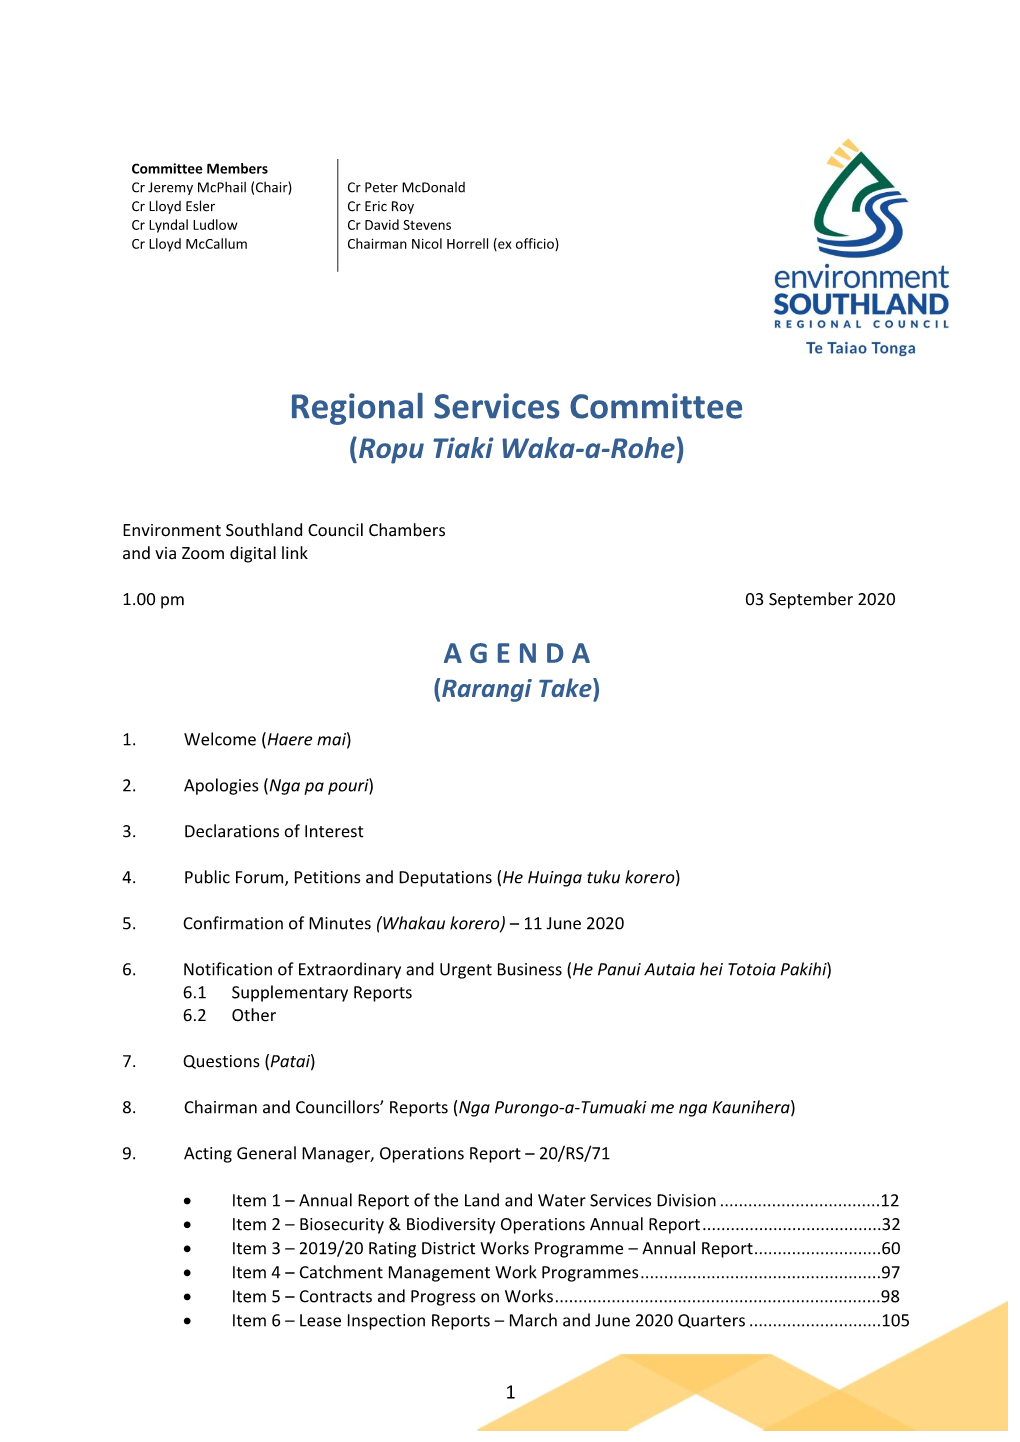 Regional Services Committee (Ropu Tiaki Waka-A-Rohe)